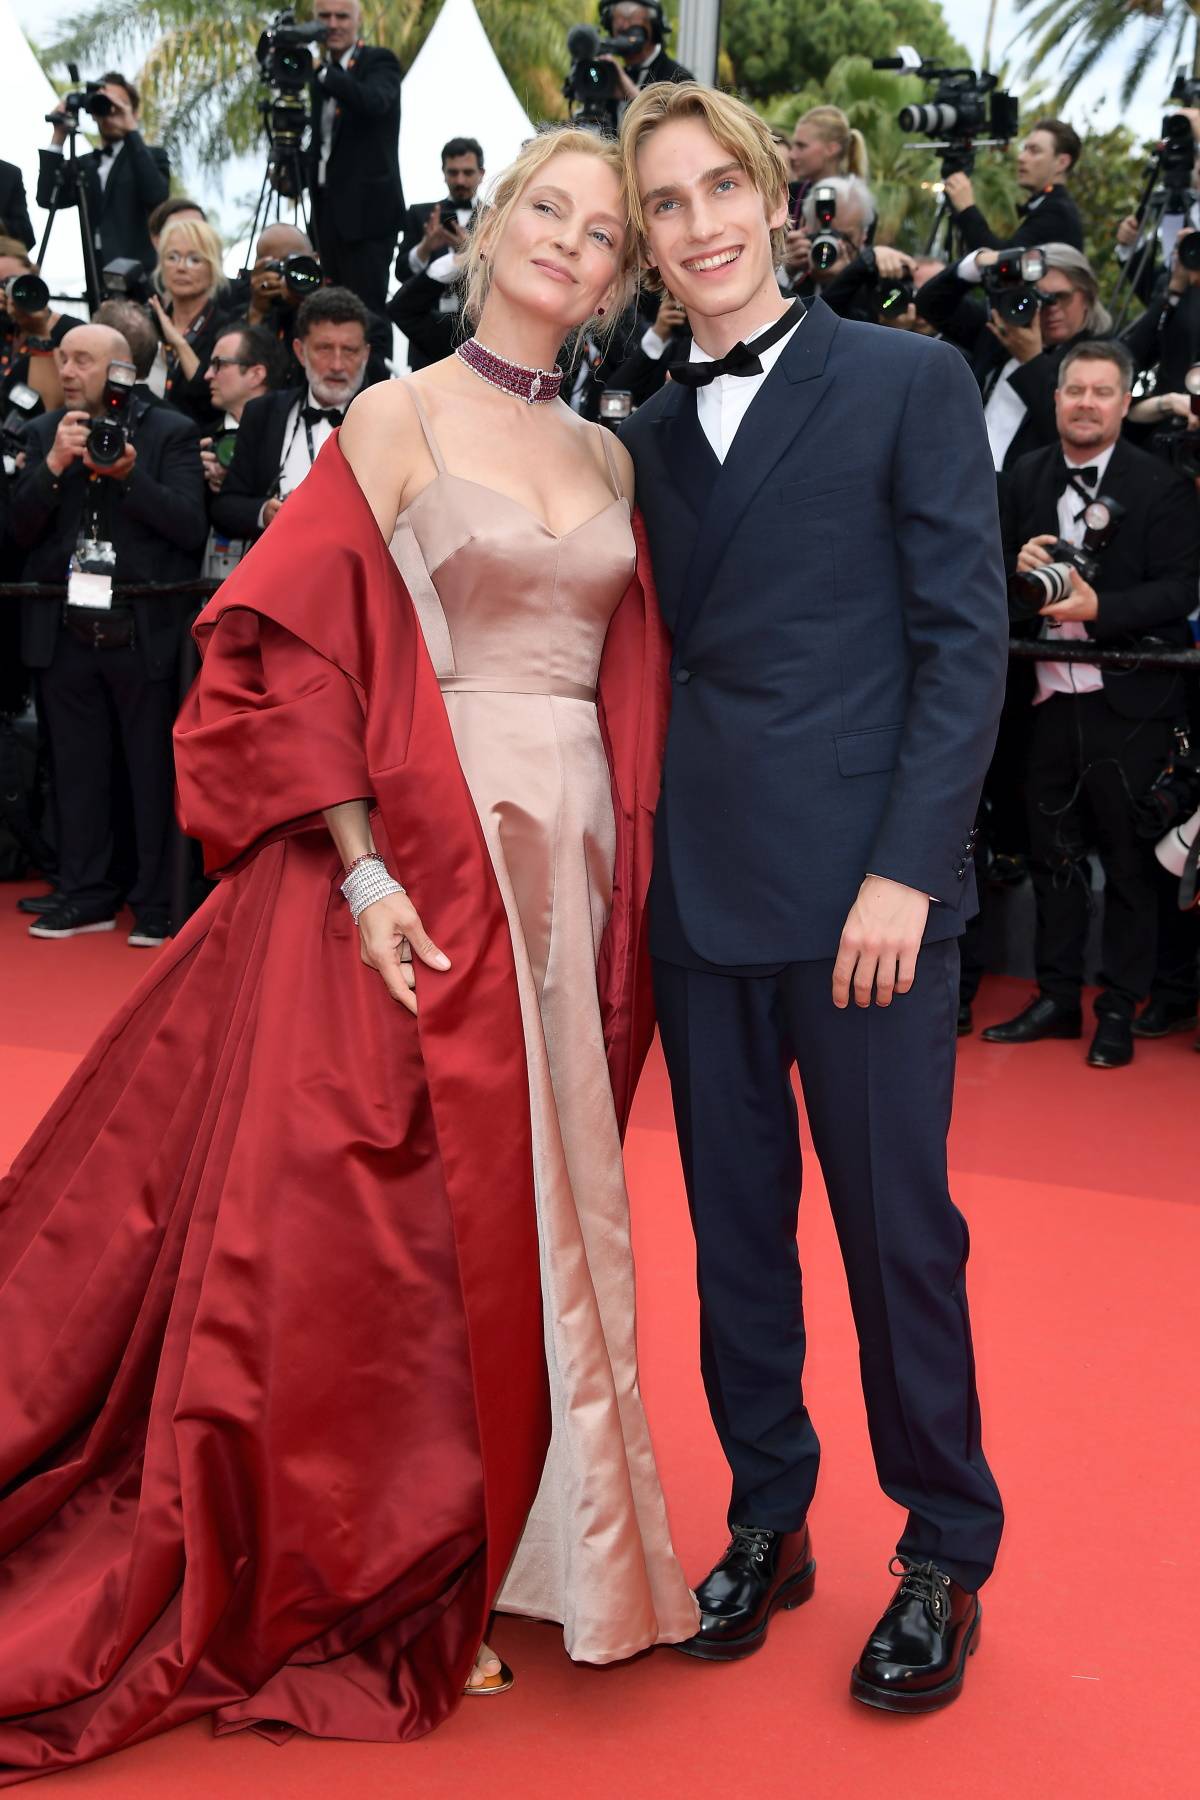 Uma Thurman z synem Levonem na ceremonii otwarcia 76. festiwa-lu filmowego w Cannes. Na canneńskim czerwonym dywanie podczas ceremonii otwarcia festiwalu Umie Thurman towarzyszył syn Levon Roan Thurman-Hawke.